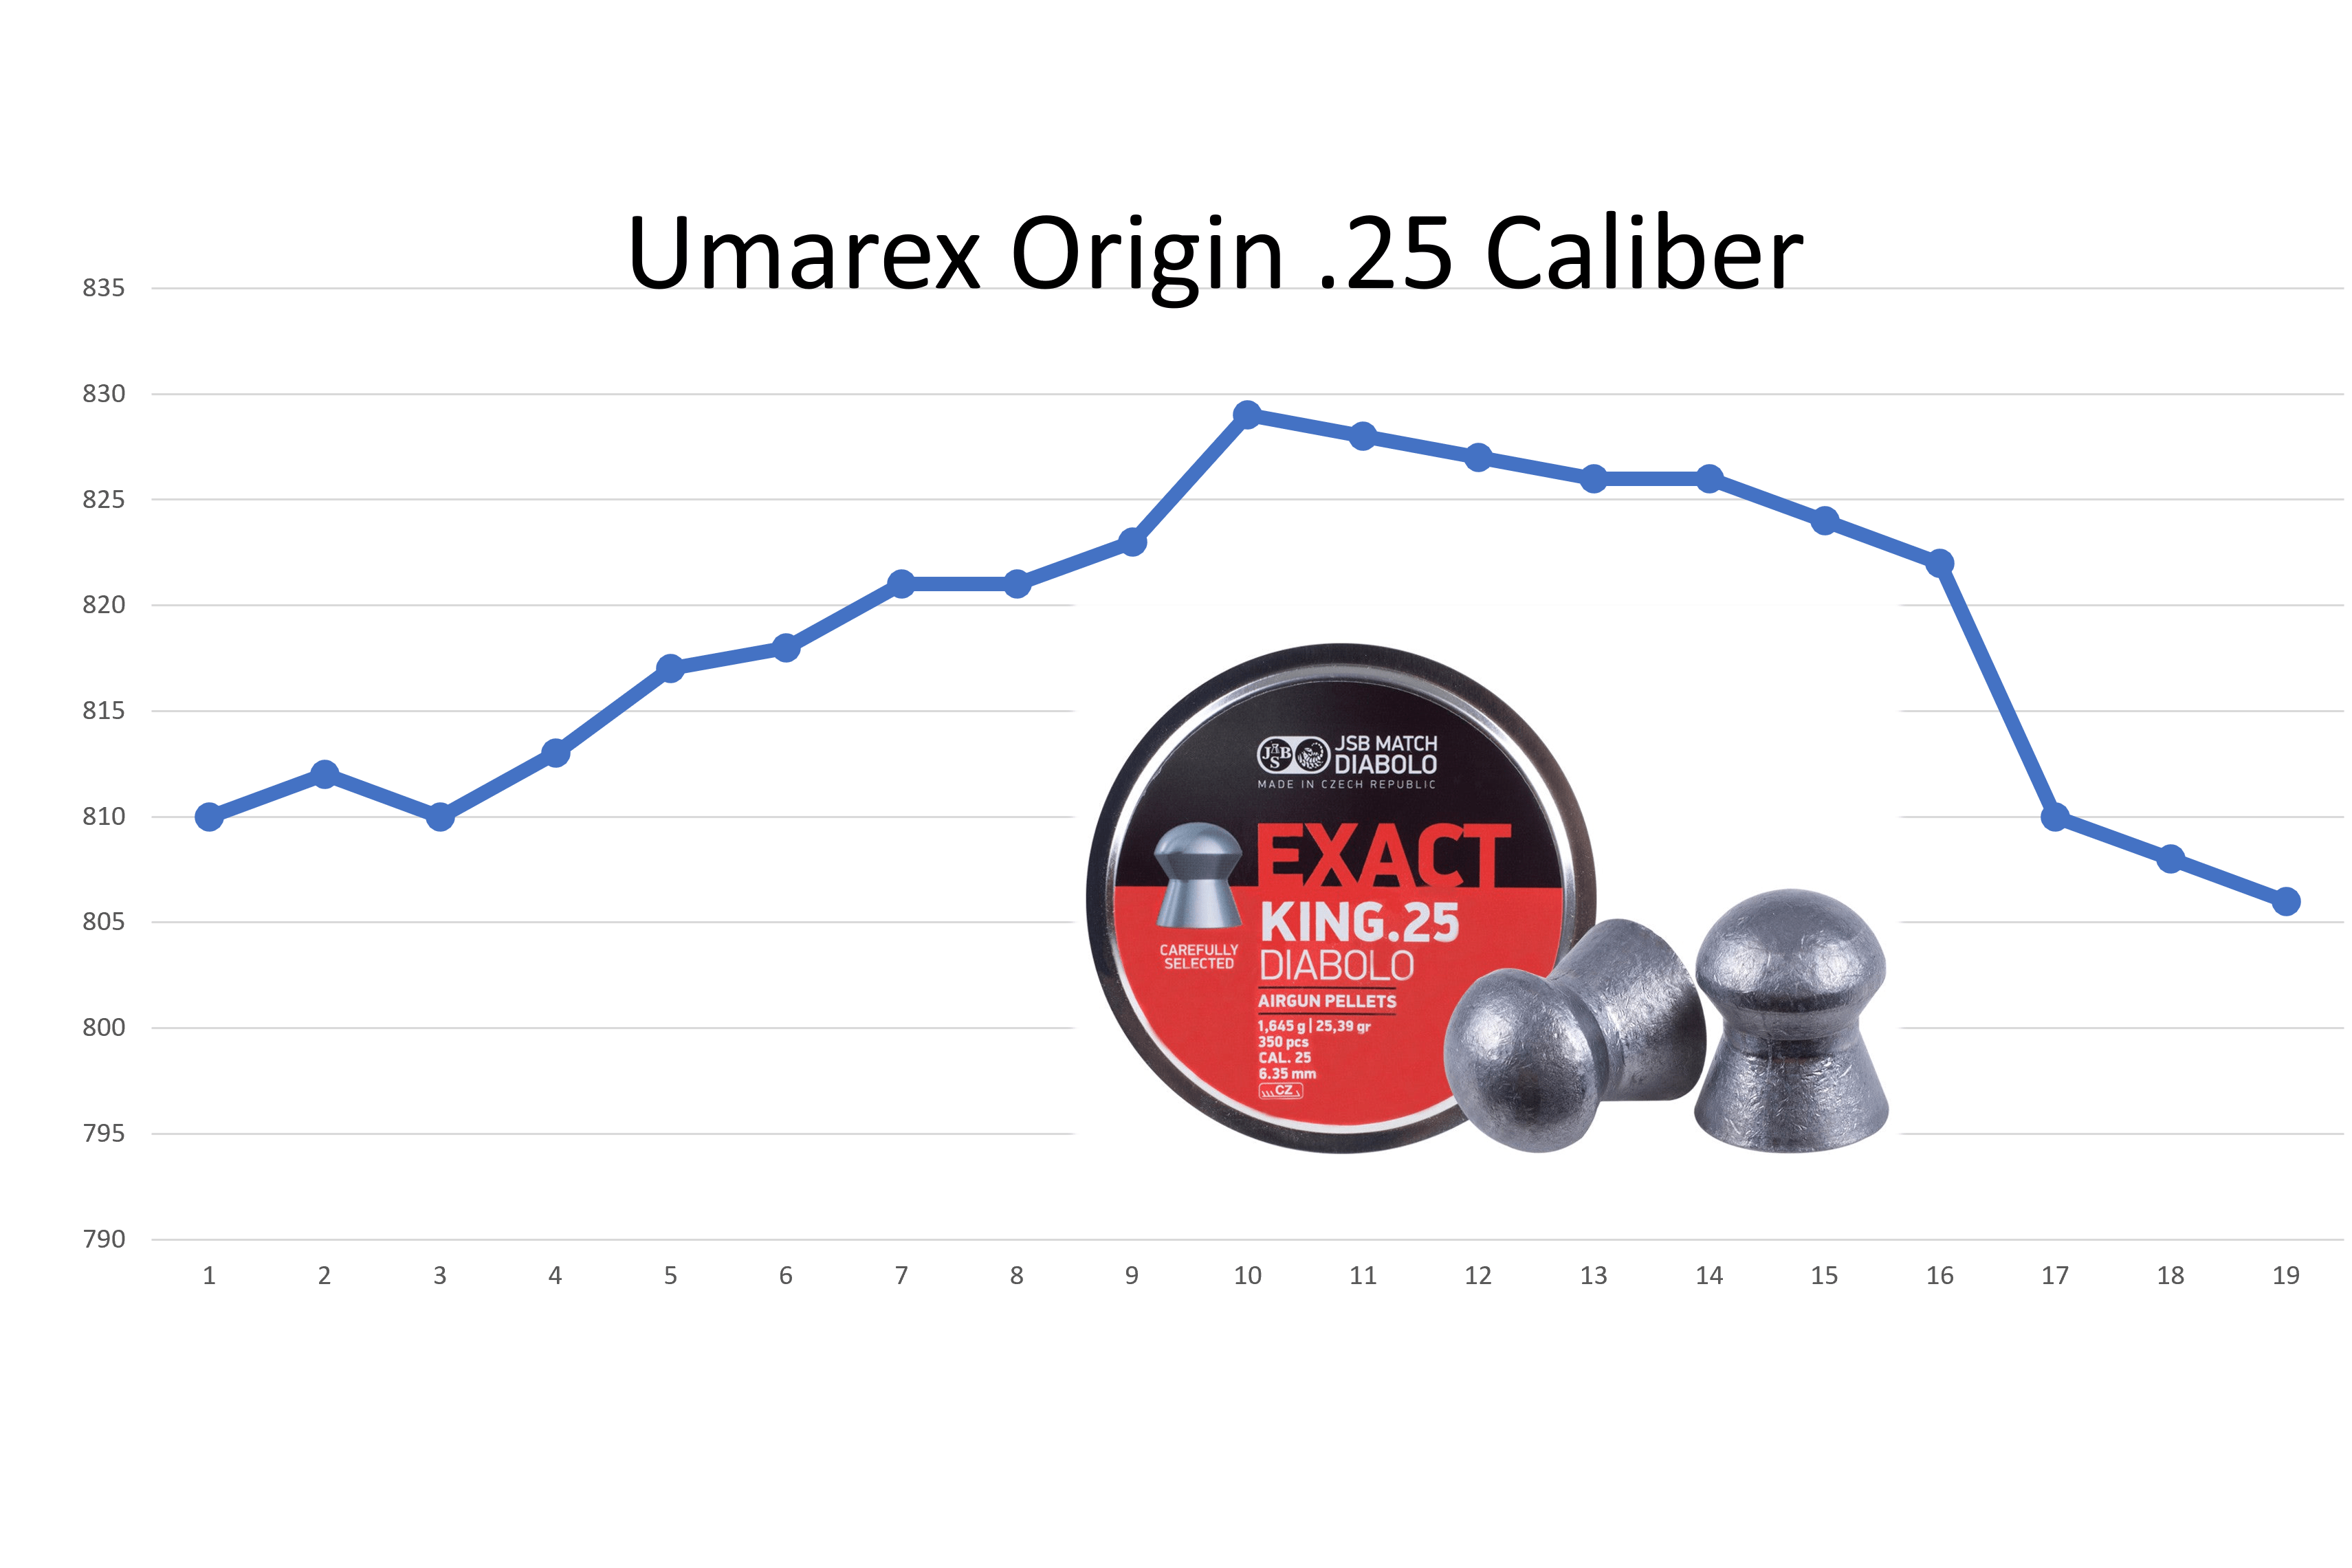 Umarex Origin chronograph results.